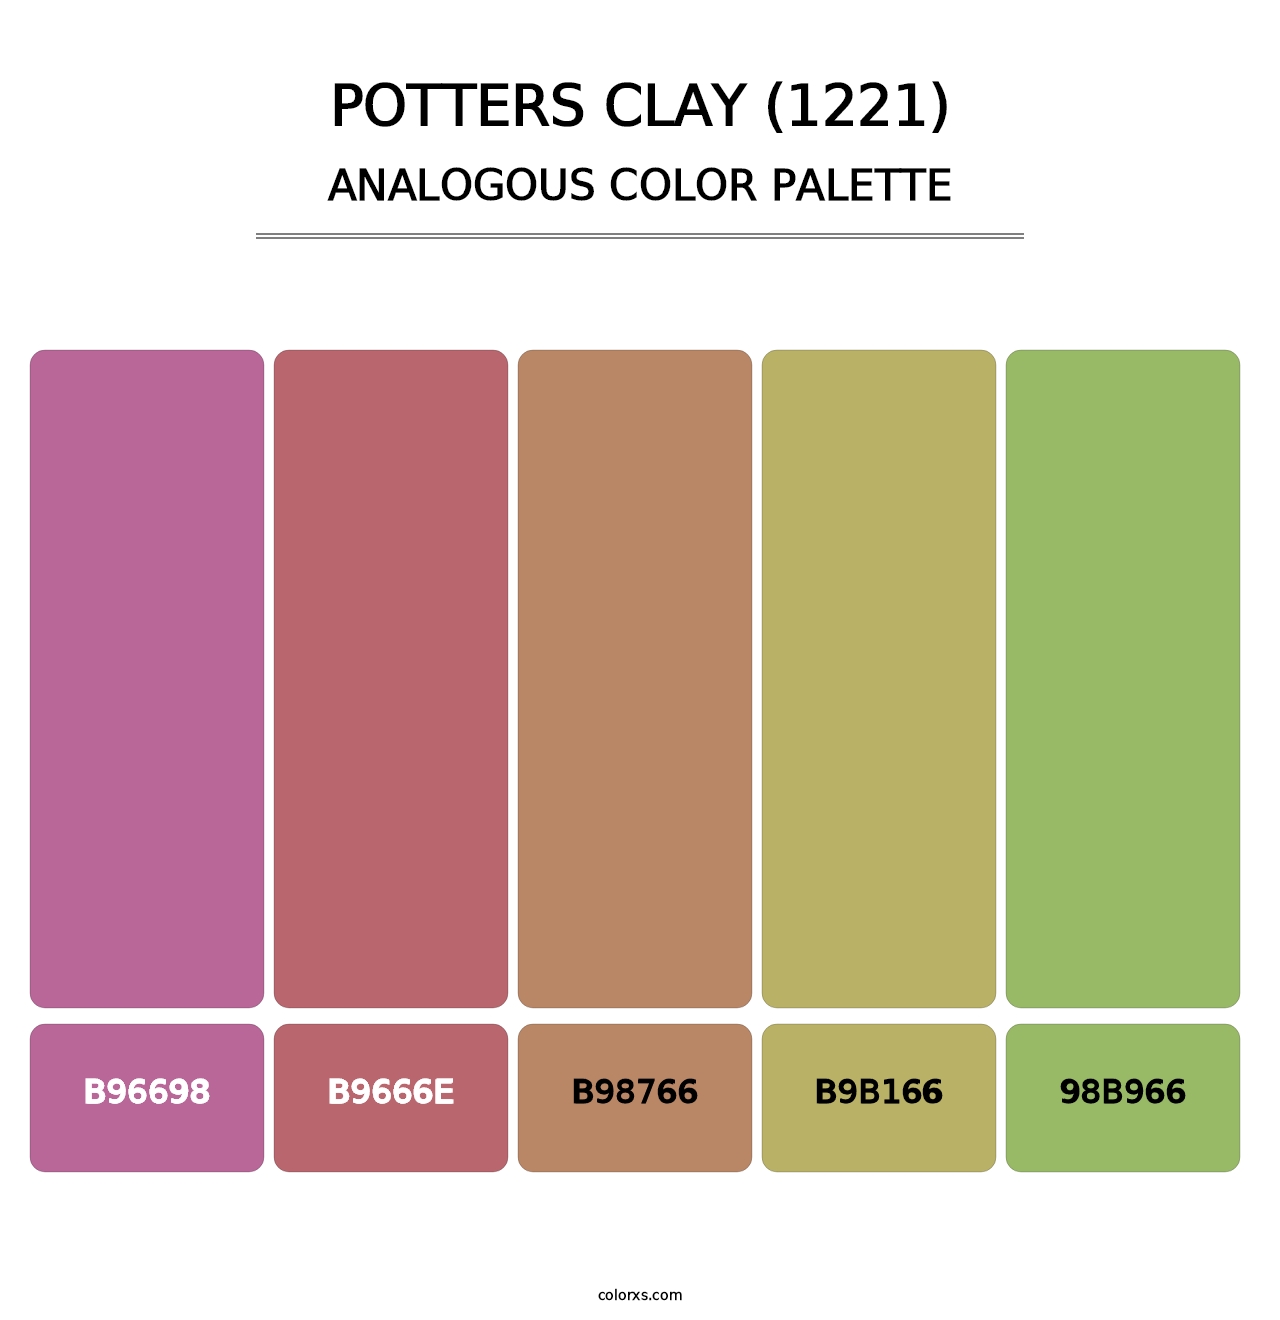 Potters Clay (1221) - Analogous Color Palette